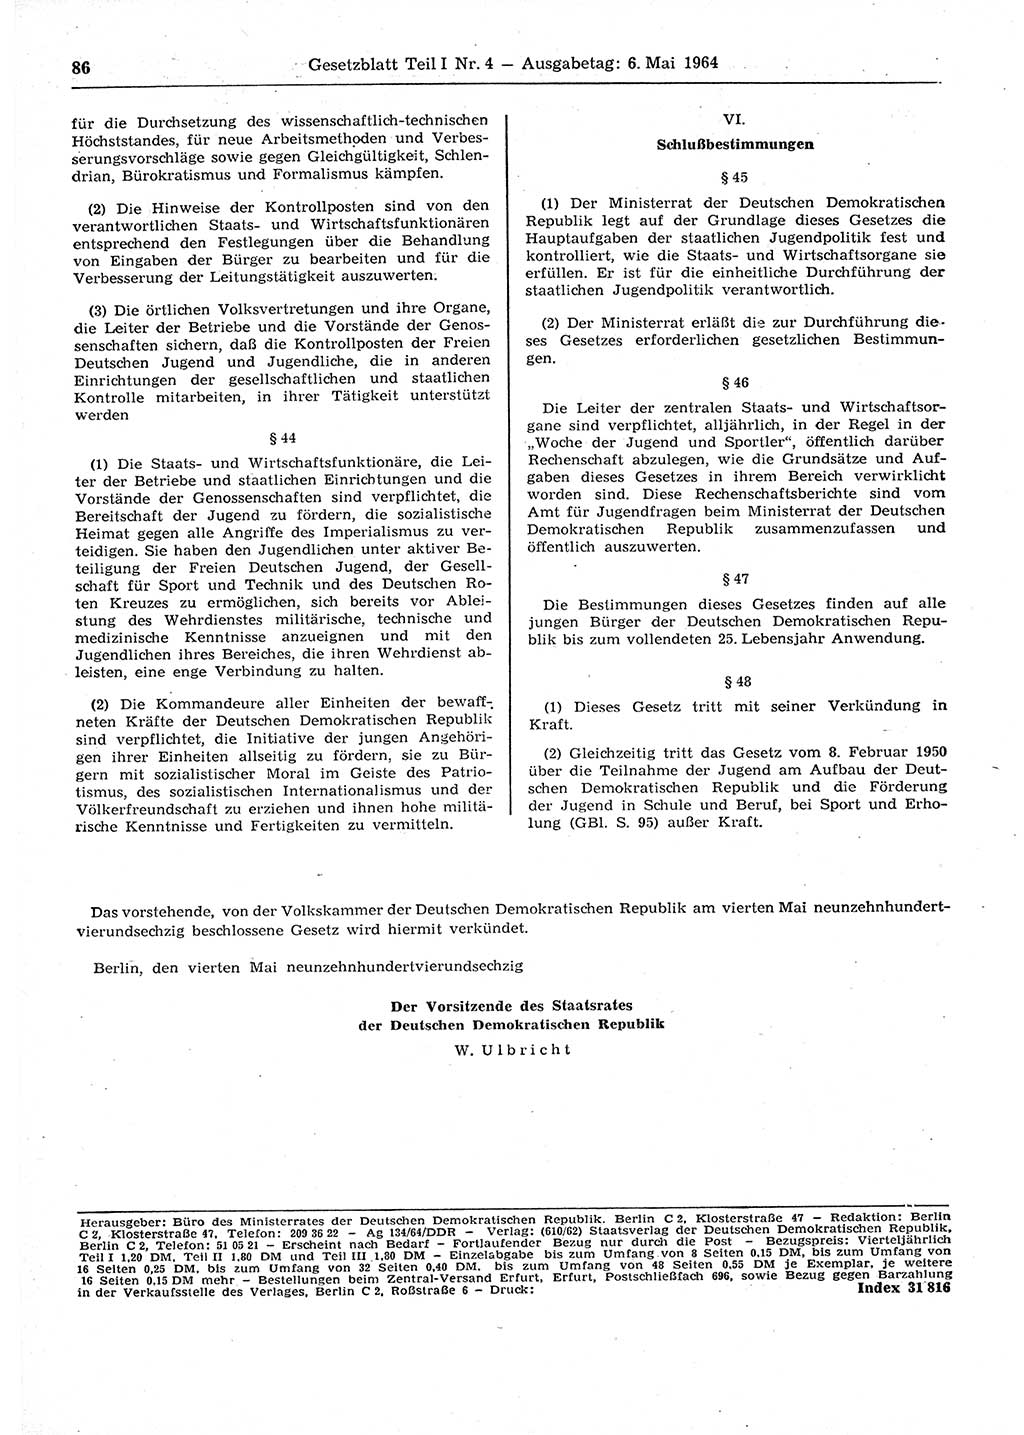 Gesetzblatt (GBl.) der Deutschen Demokratischen Republik (DDR) Teil Ⅰ 1964, Seite 86 (GBl. DDR Ⅰ 1964, S. 86)